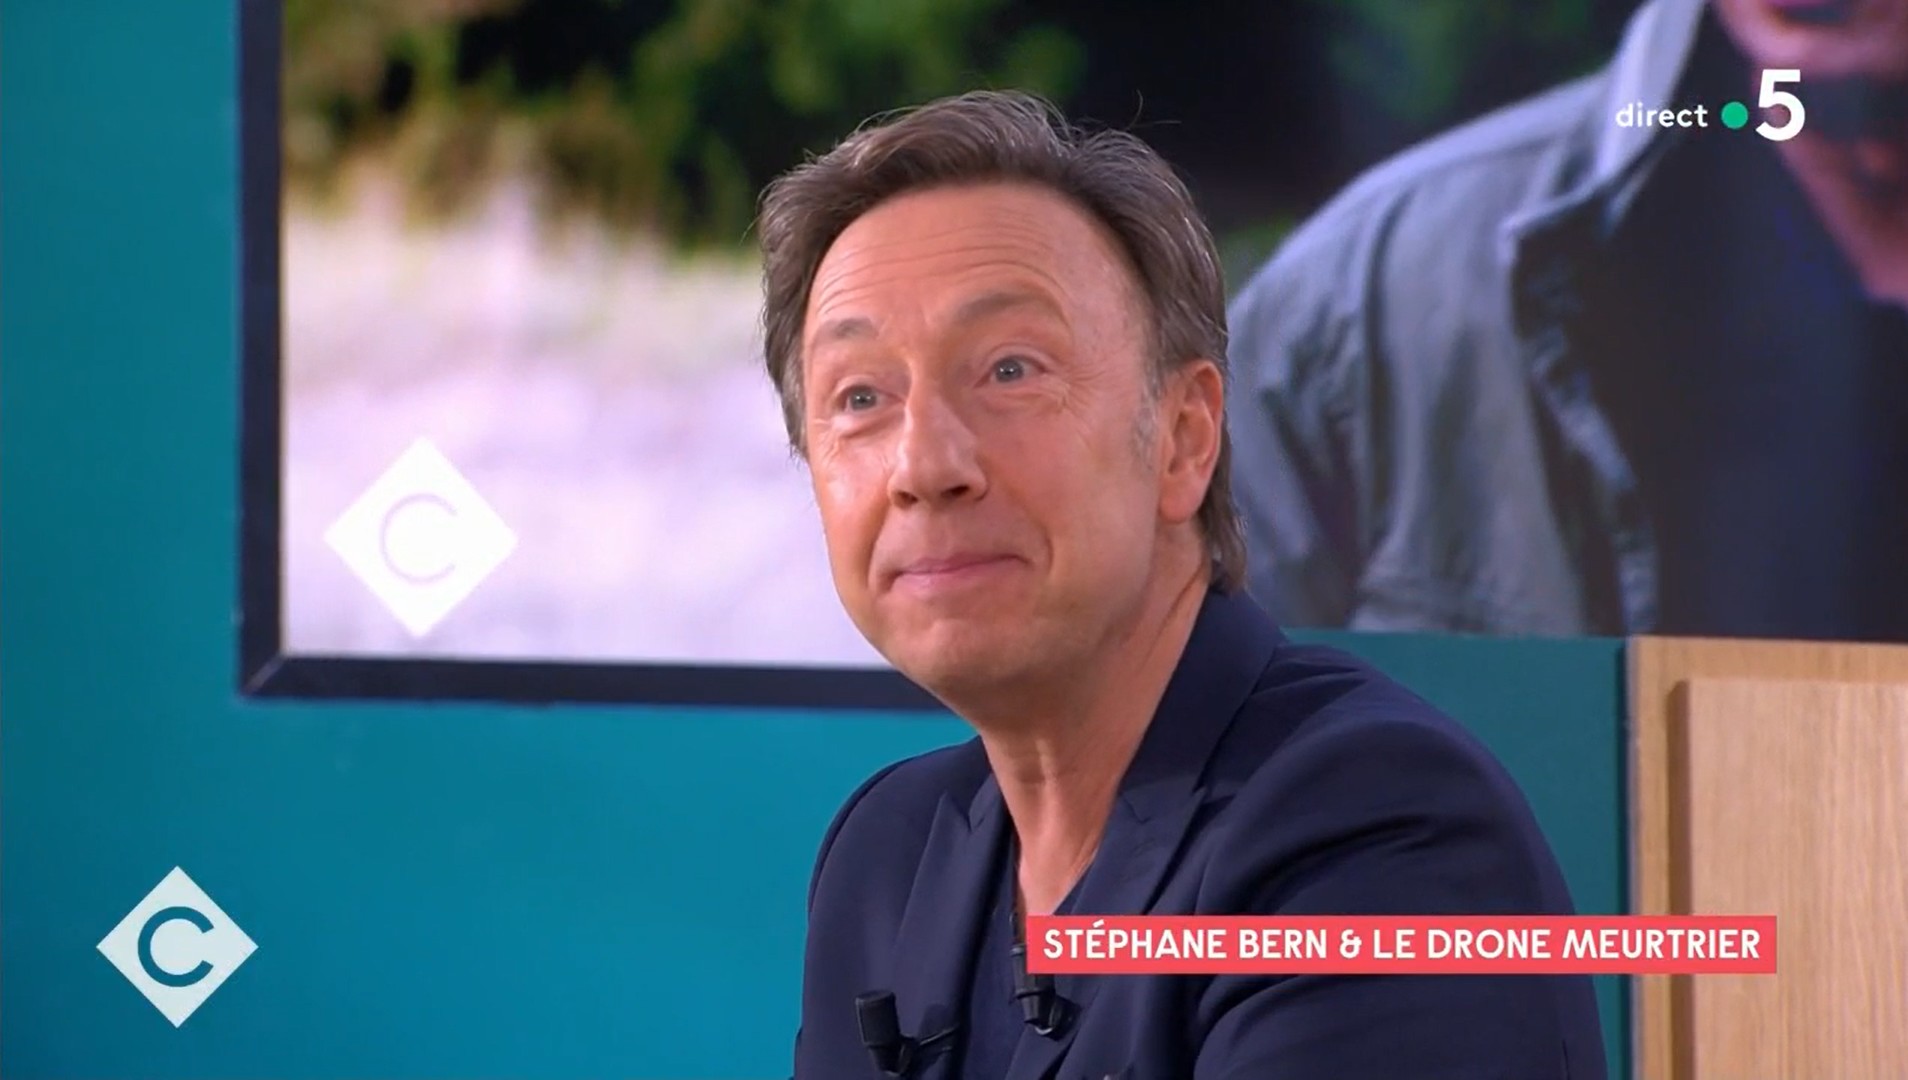 Au début, ça m'a un peu agacé" : Stéphane Bern revient sur son rôle de  militaire dans un téléfilm de France 3 qui l'a transformé en "meme" (VIDEO)